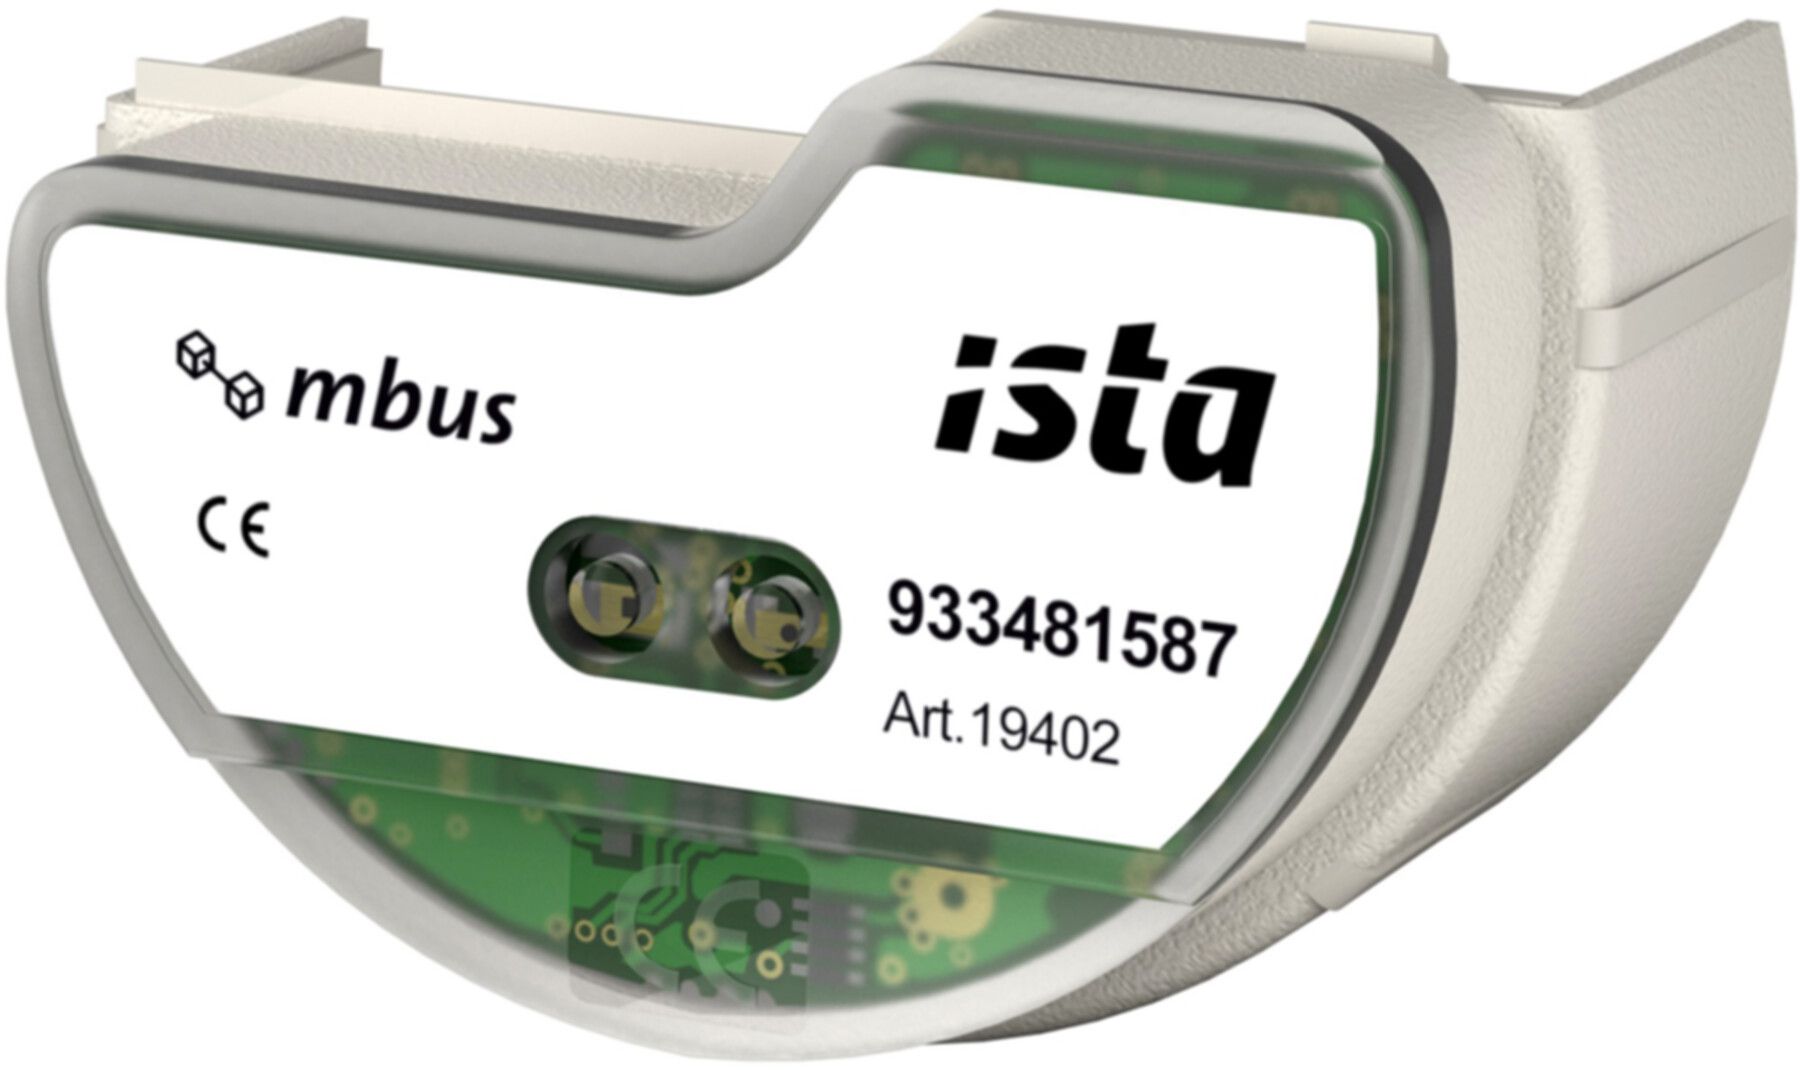 Modul zu istameter m und domaqua m steckbar M - Bus - ISTA - Wärme- / Wasserzähler